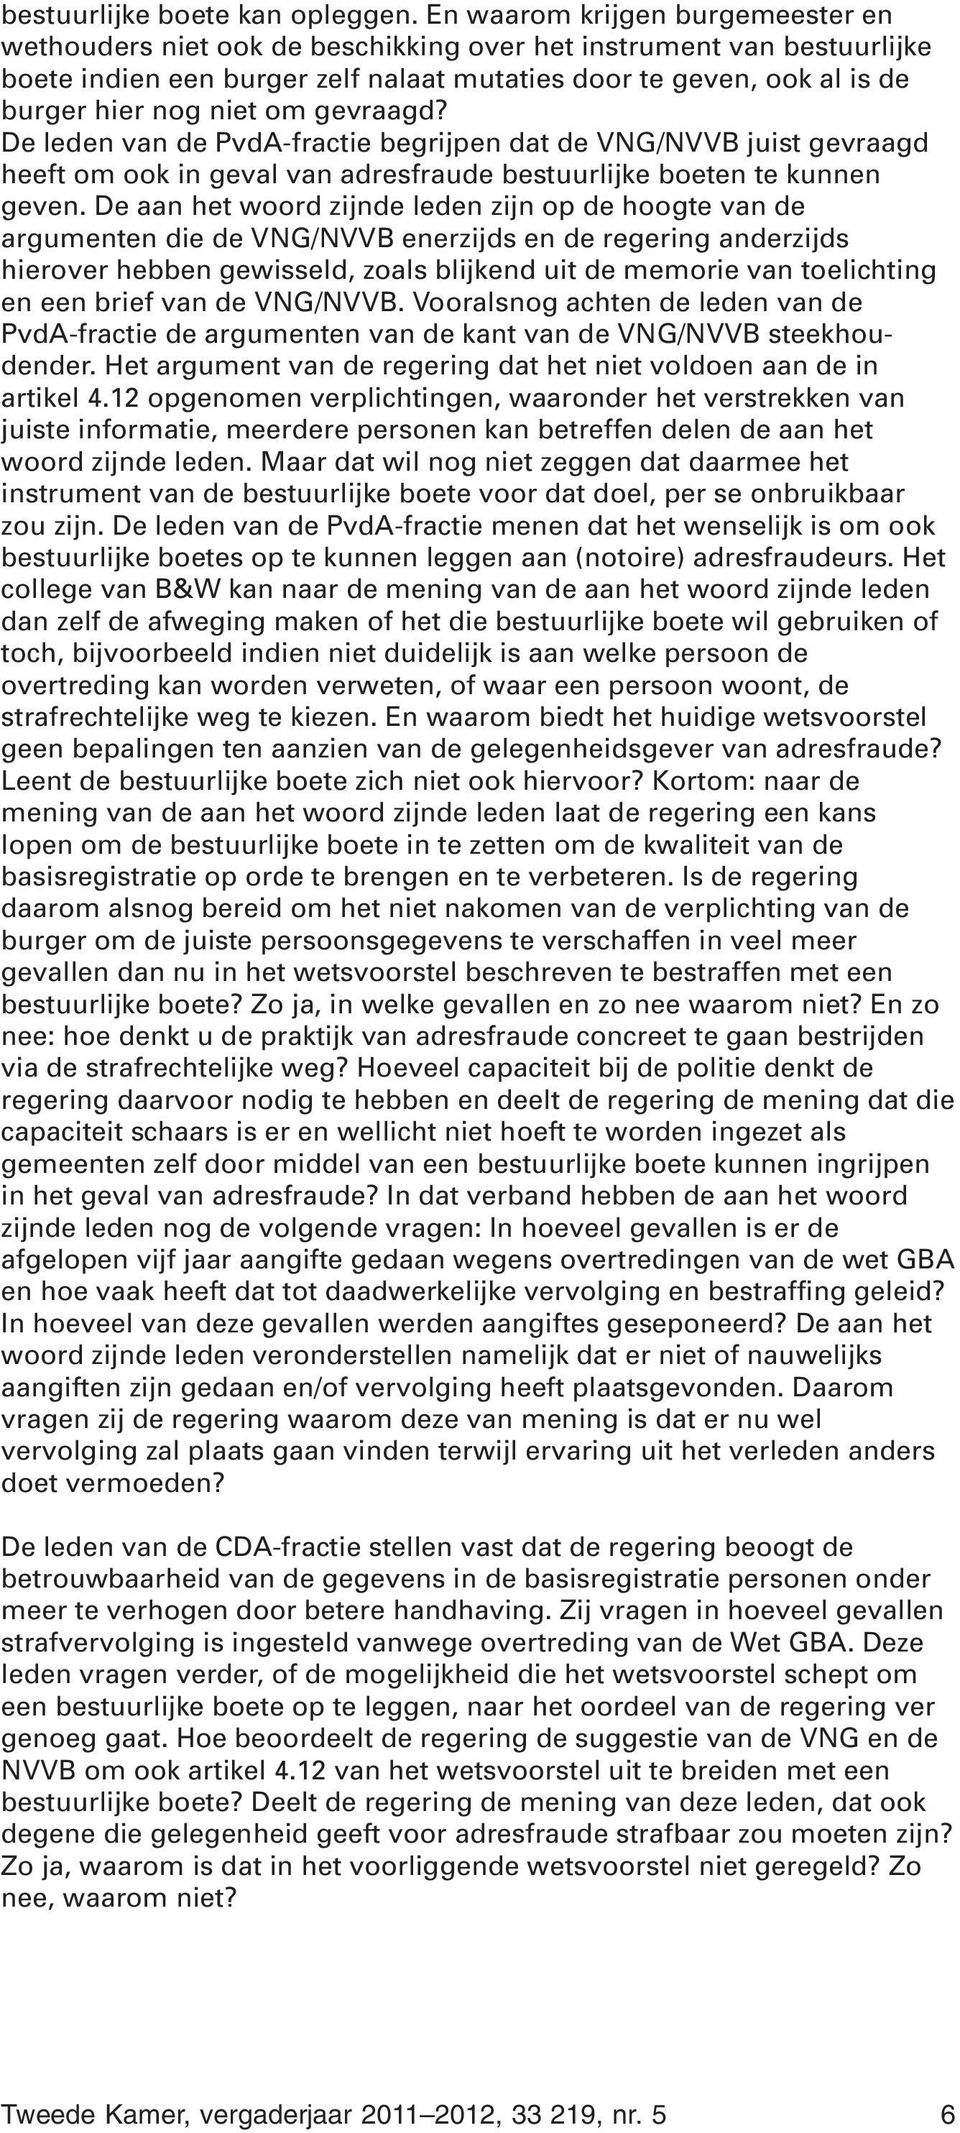 om gevraagd? De leden van de PvdA-fractie begrijpen dat de VNG/NVVB juist gevraagd heeft om ook in geval van adresfraude bestuurlijke boeten te kunnen geven.